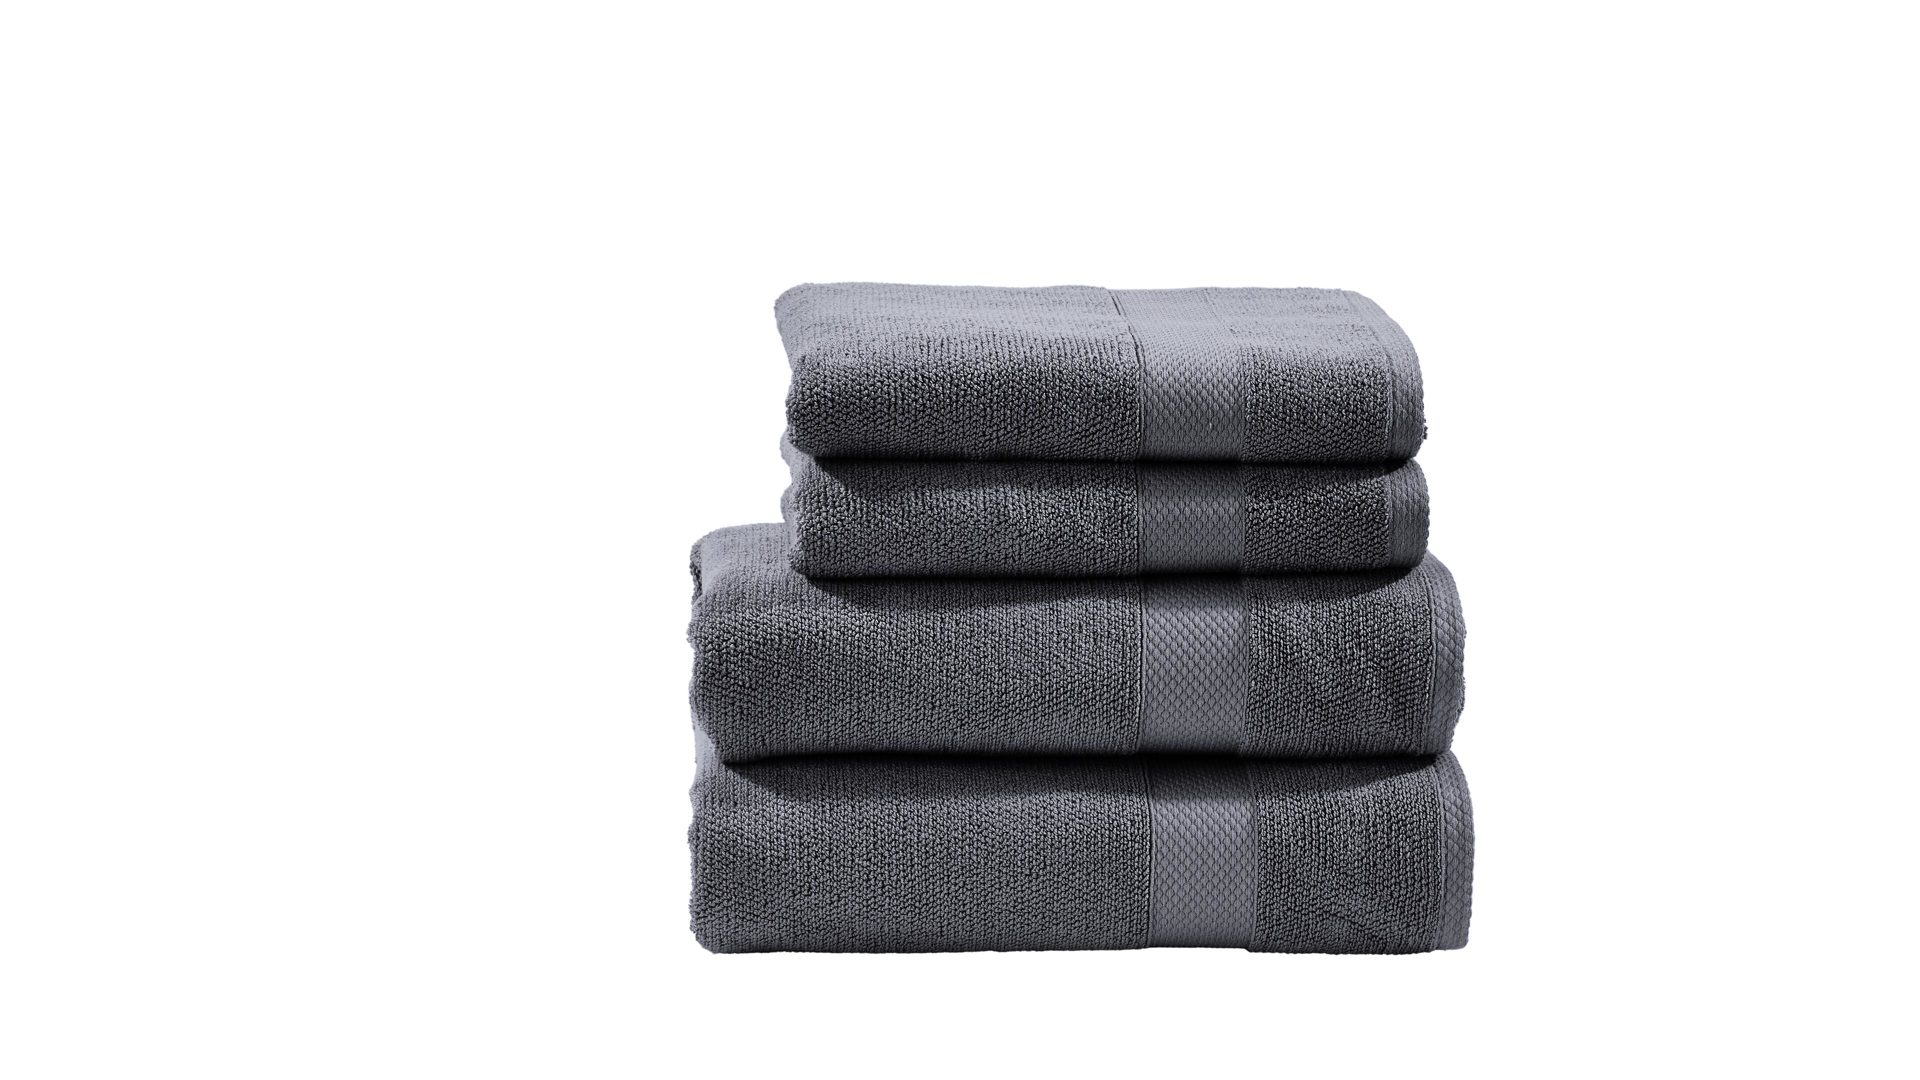 Handtuch-Set Done.® be different aus Stoff in Anthrazit DONE.® Handtuch-Set Deluxe anthrazitfarbene Baumwolle – vierteilig